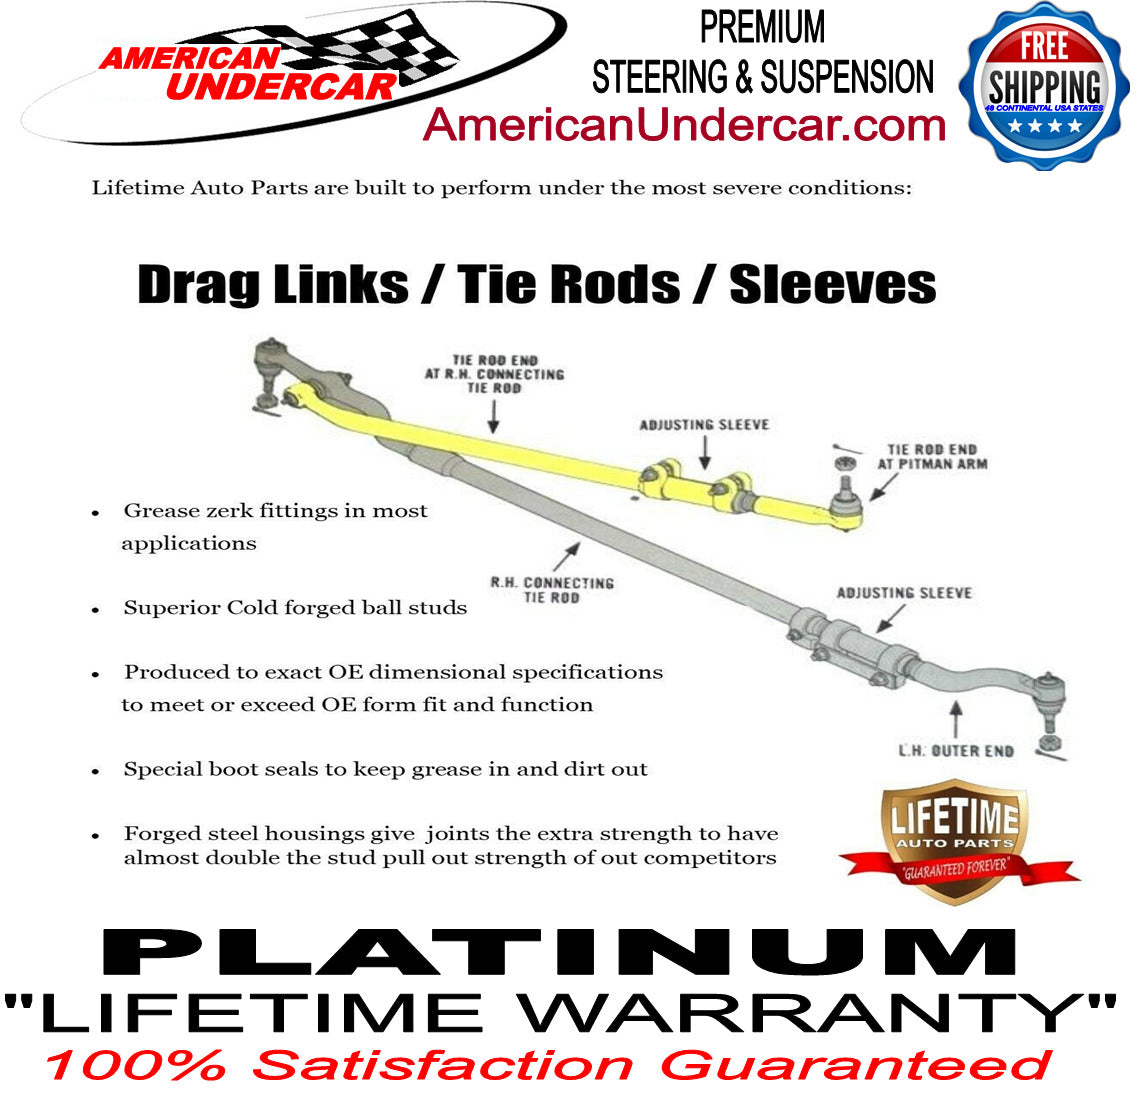 Lifetime Lower Ball Joint Tie Rod Steering Kit for 2010-2014 Ford F150 SVT Raptor 6.2L V8 4x4